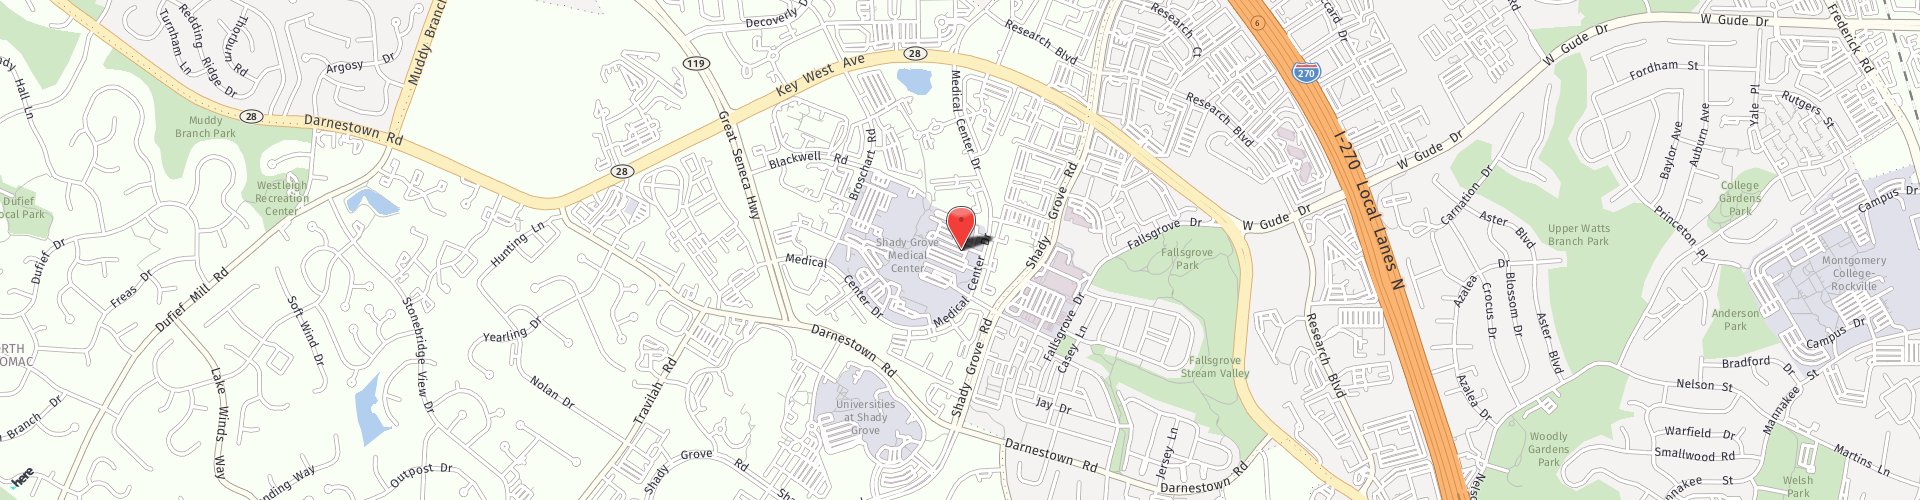 Location Map: 9711 Medical Center Dr. Rockville, MD 20850